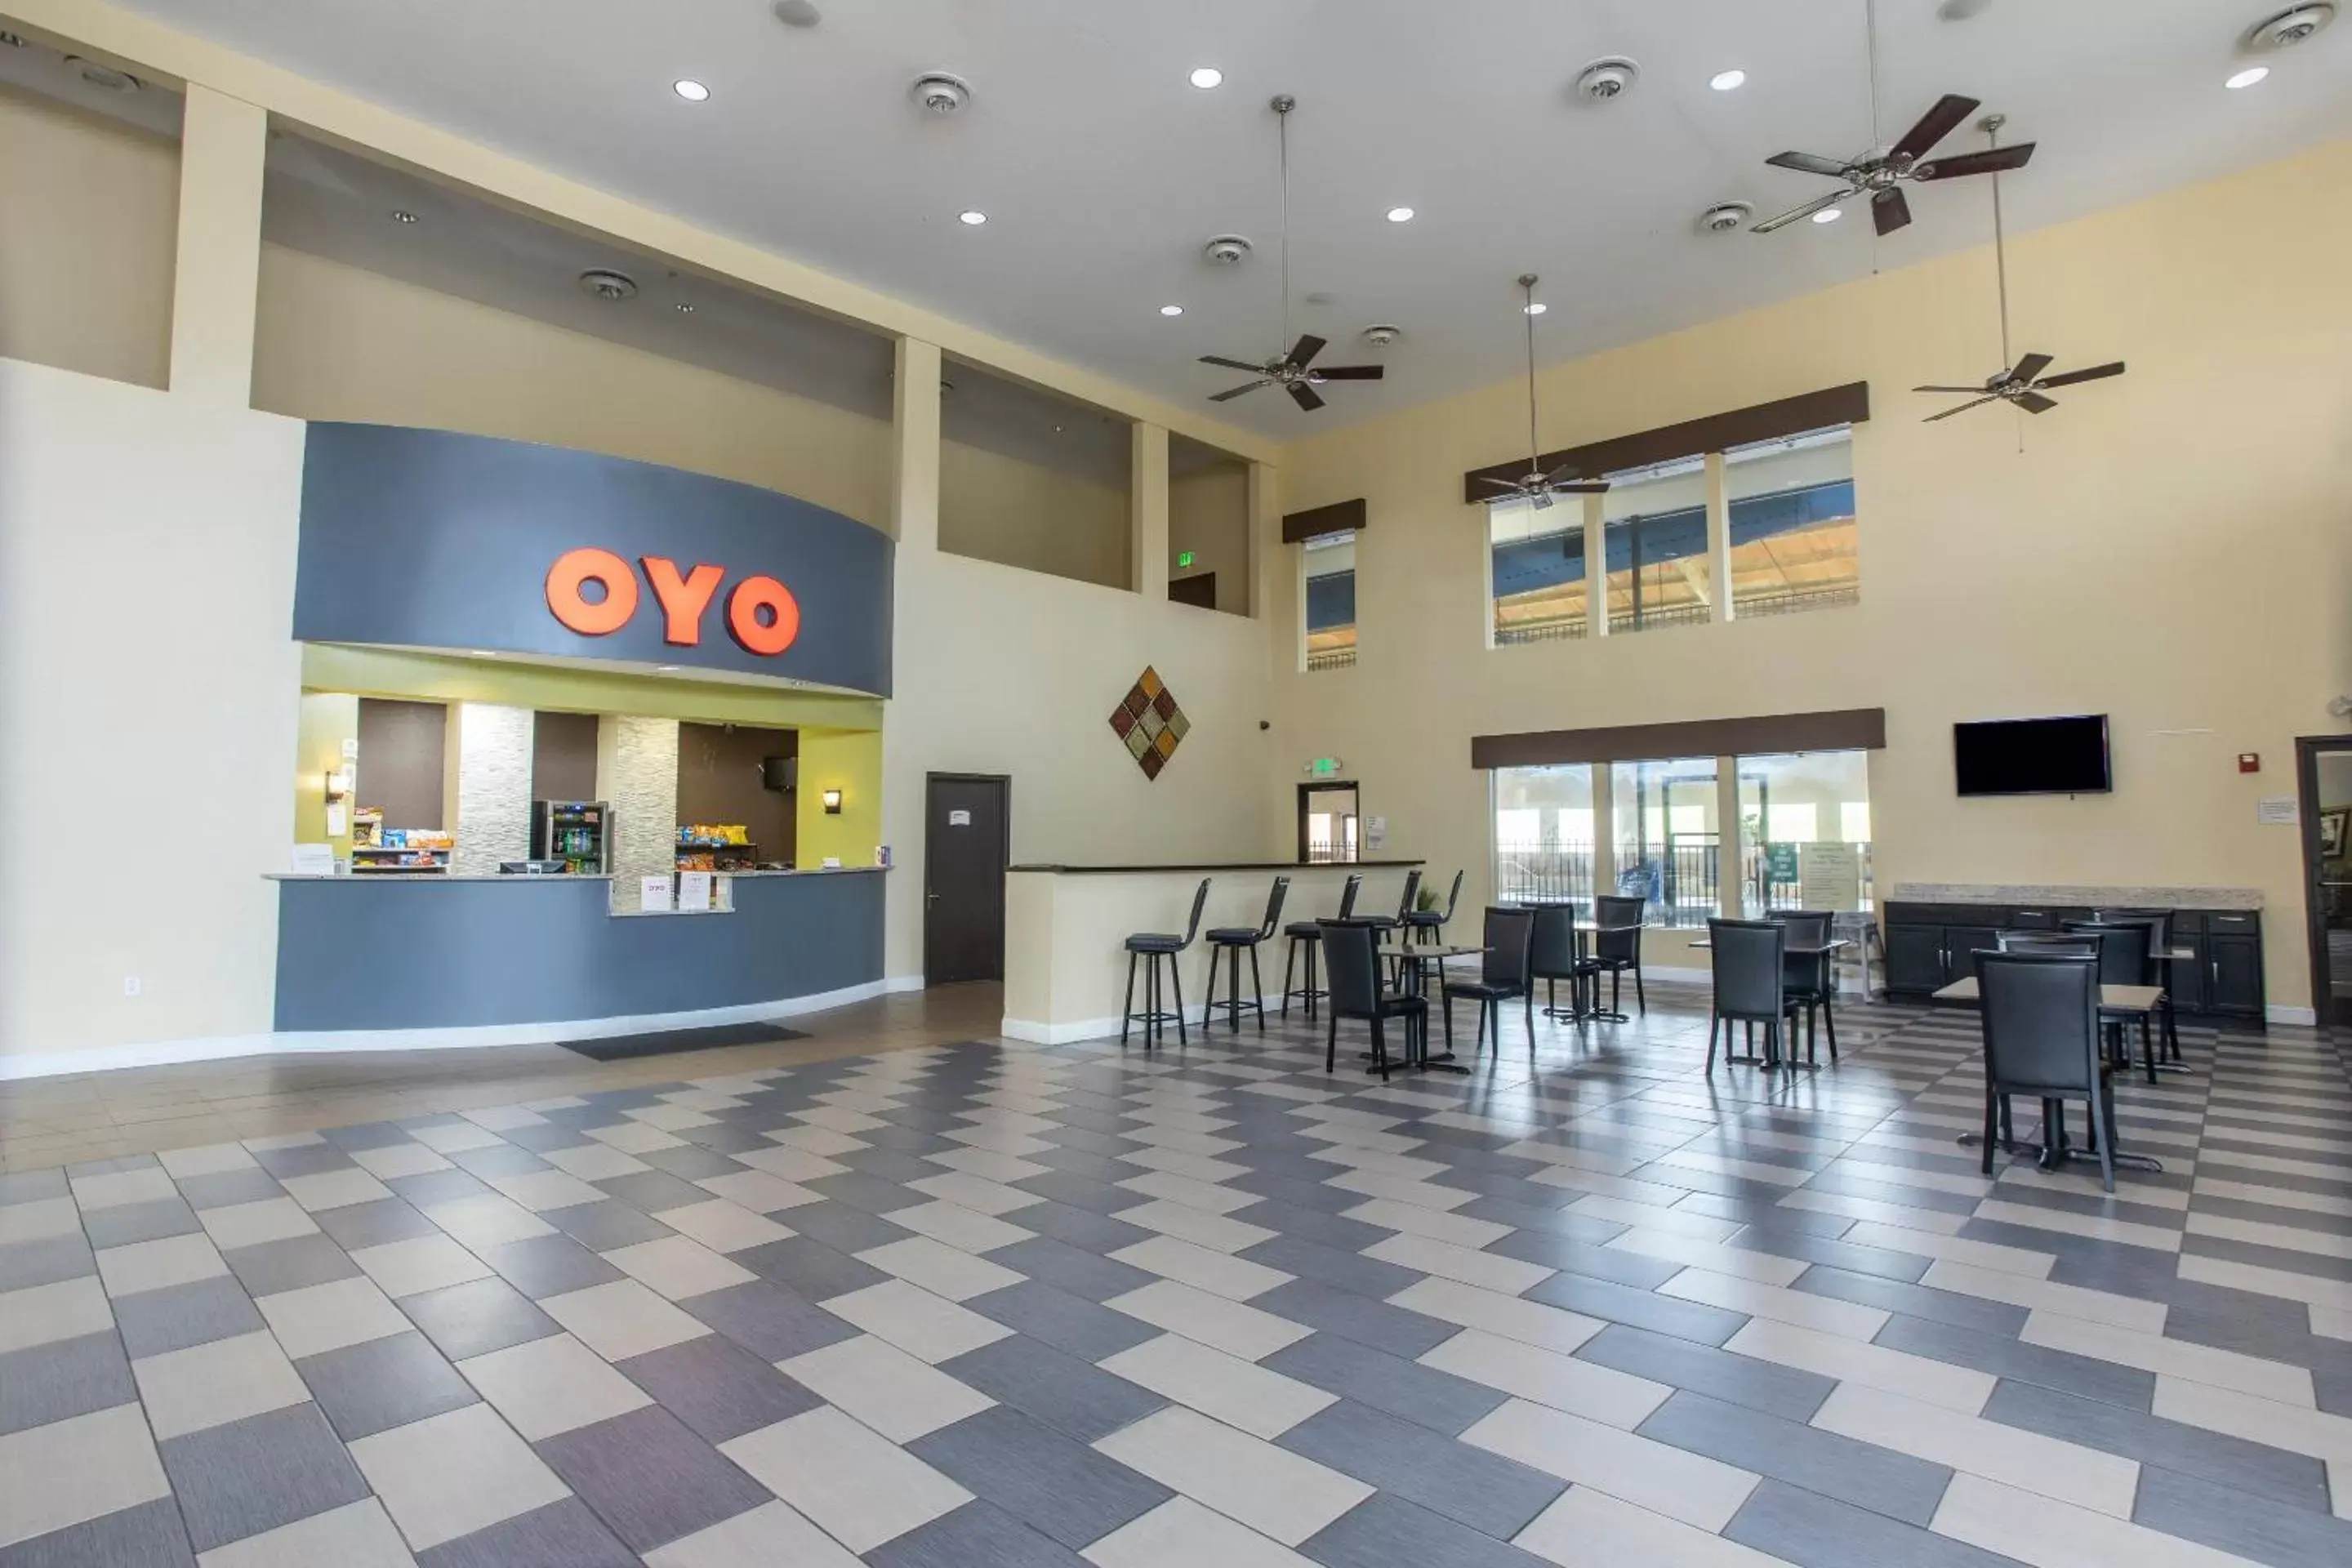 Lobby or reception in OYO Hotel Knoxville TN Cedar Bluff I-40